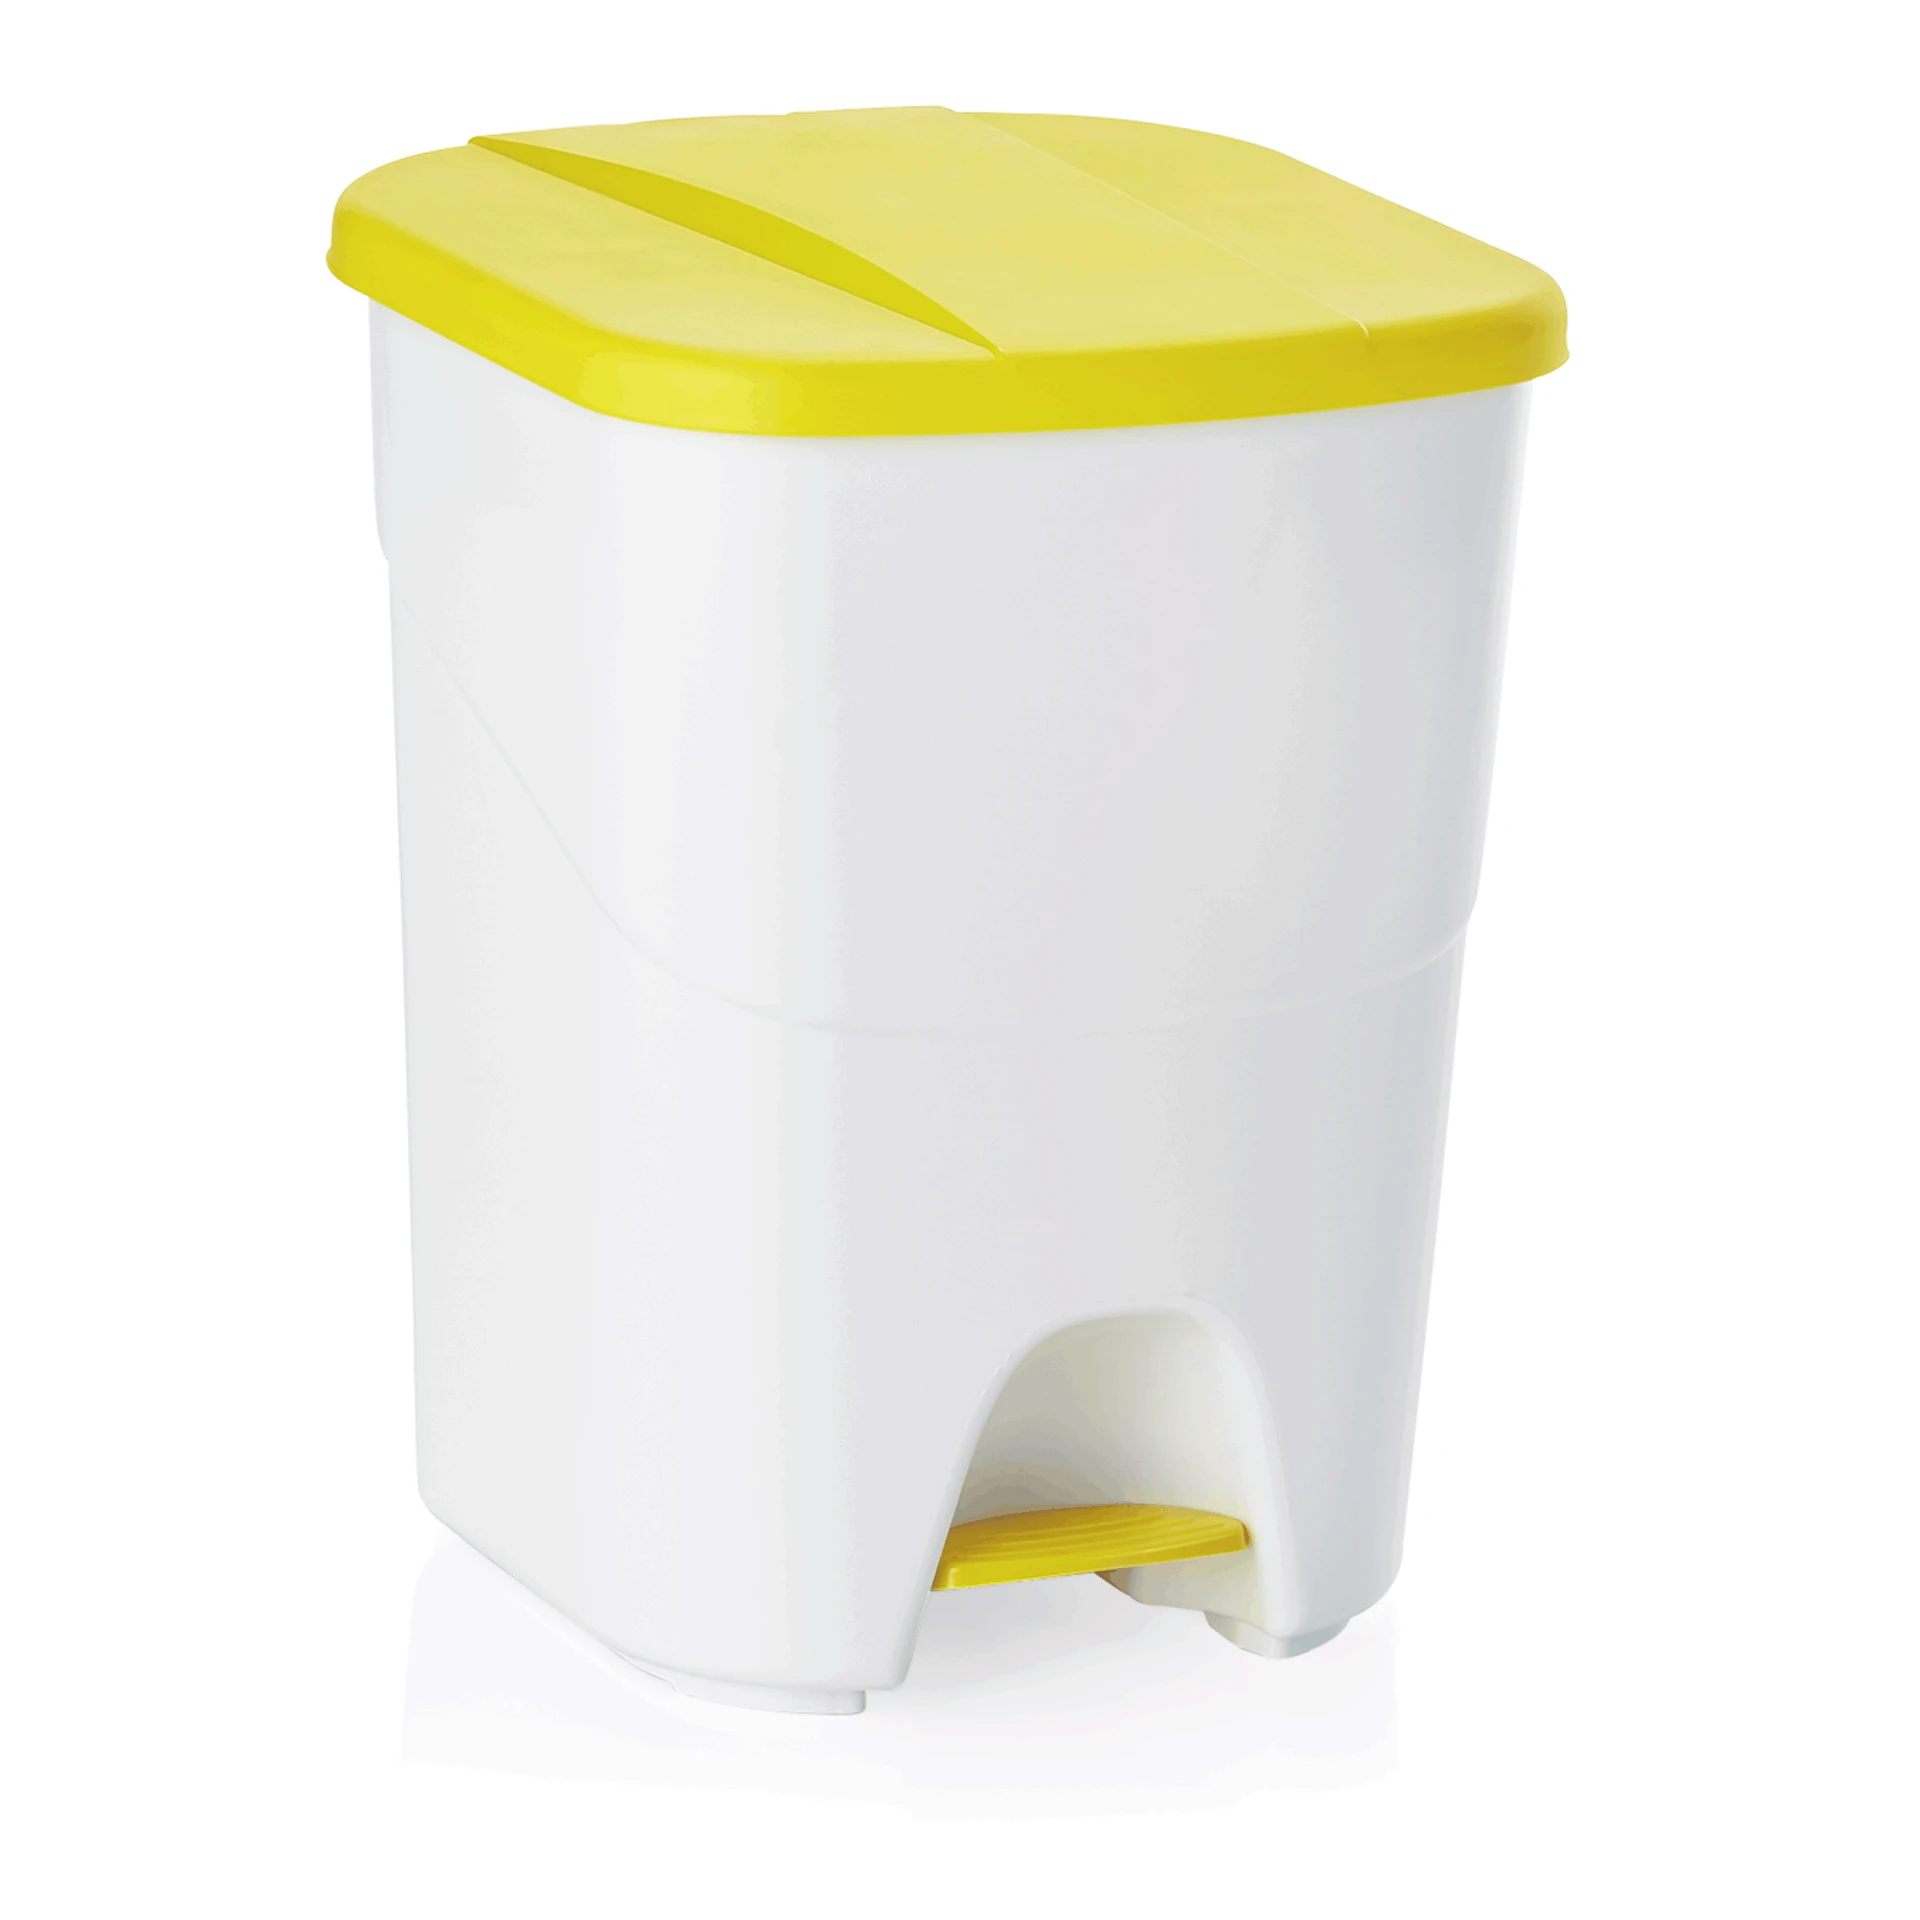 Pedal waste bin Yellow